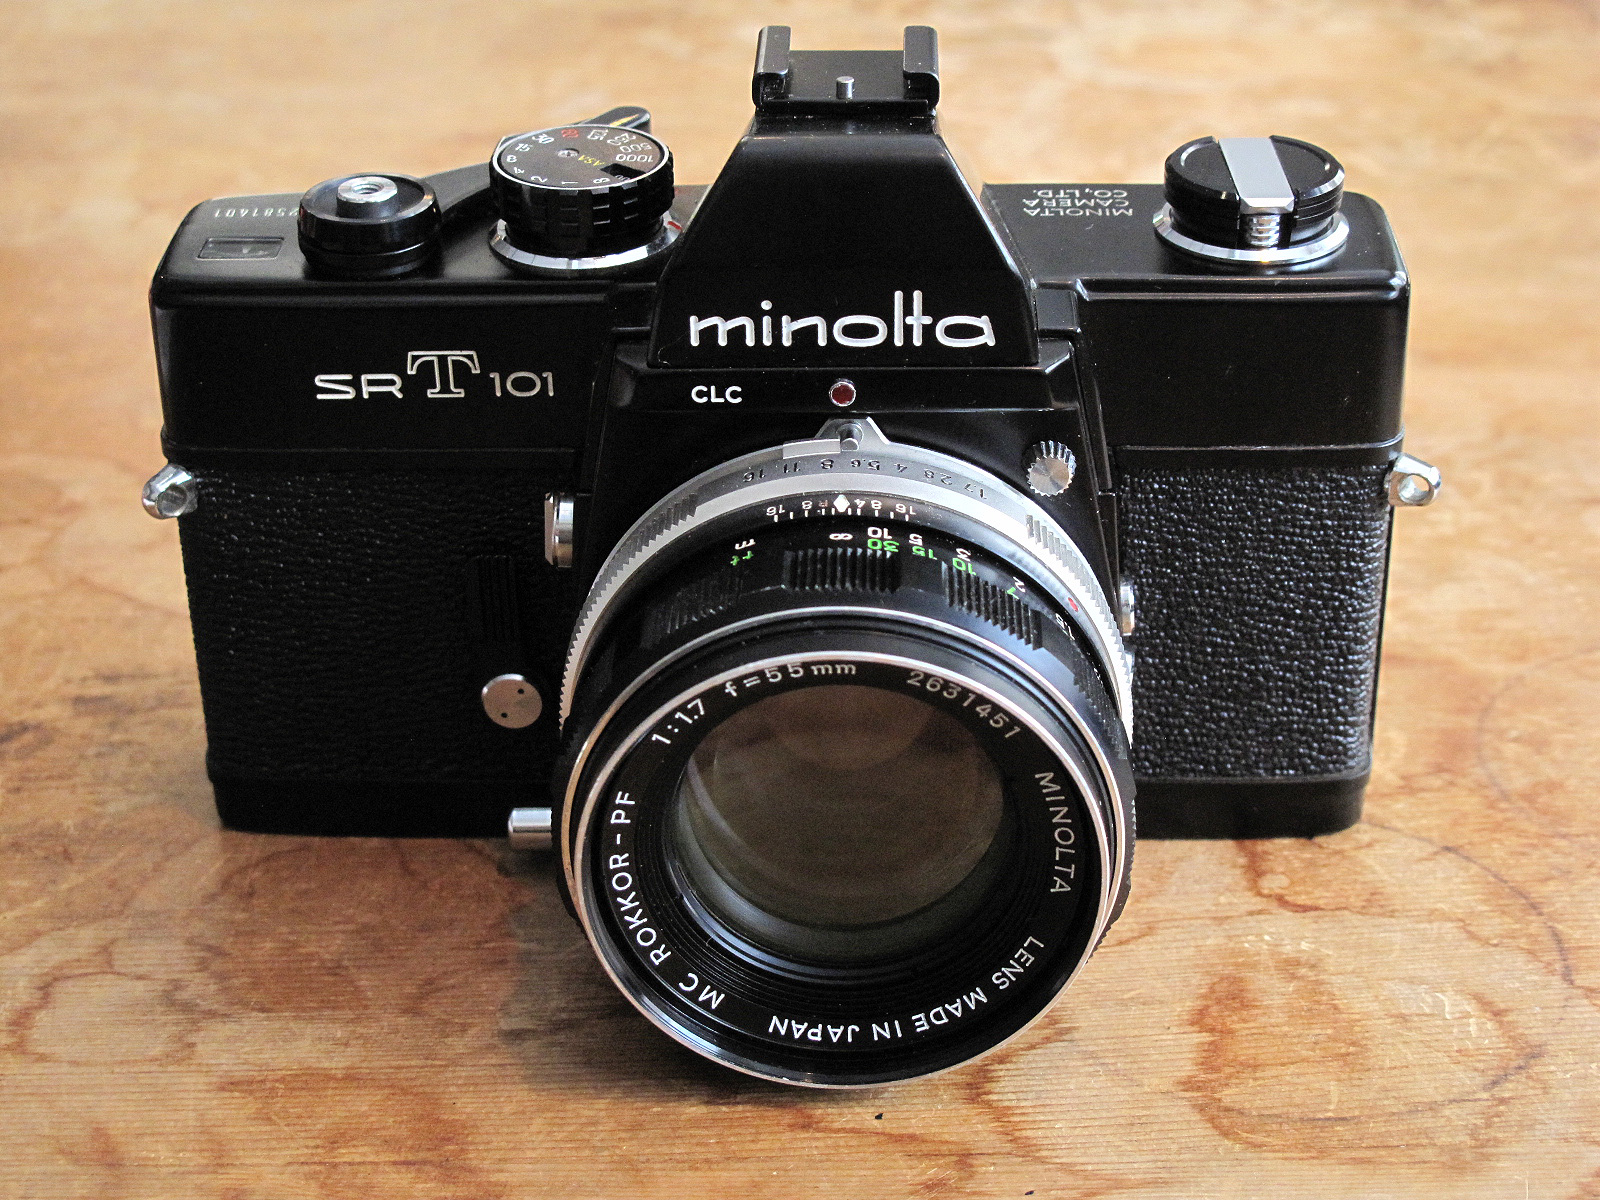 ミノルタSRT101ブラック ボディ フィルムカメラ  レンズ付き注意事項